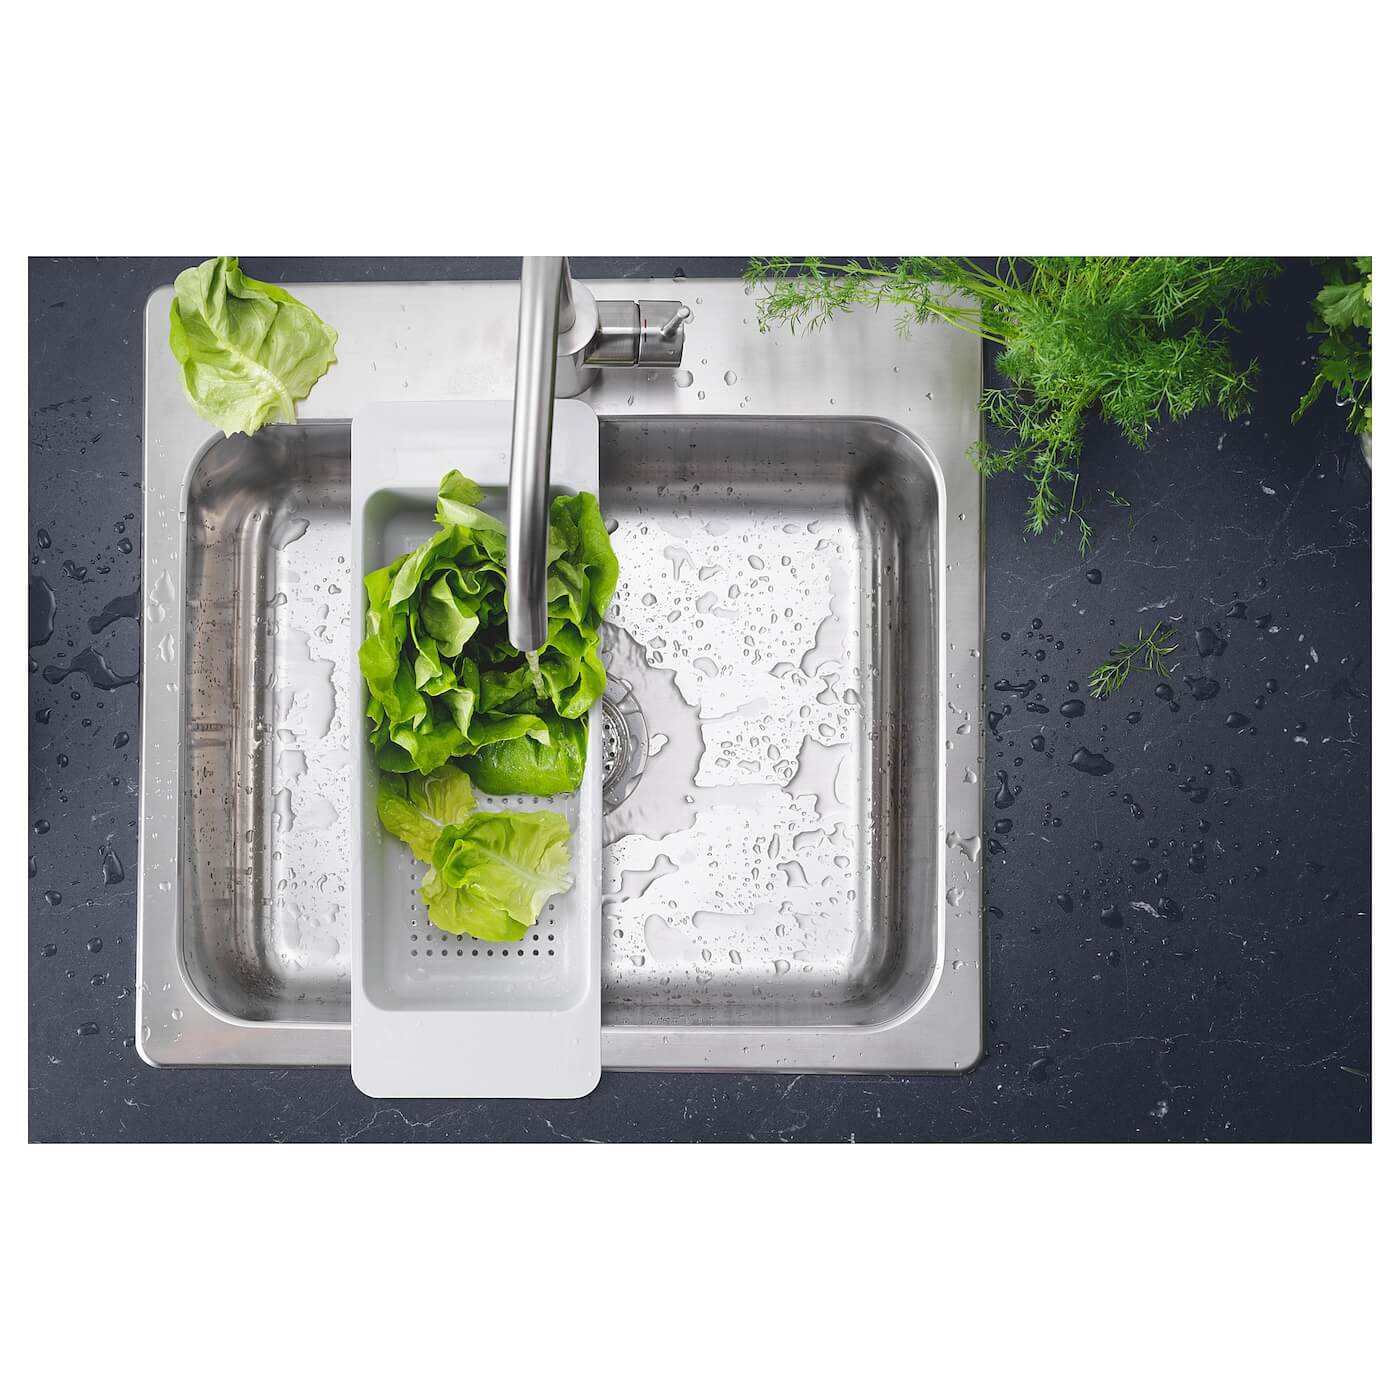 شستشو سبزیجات در آبکش